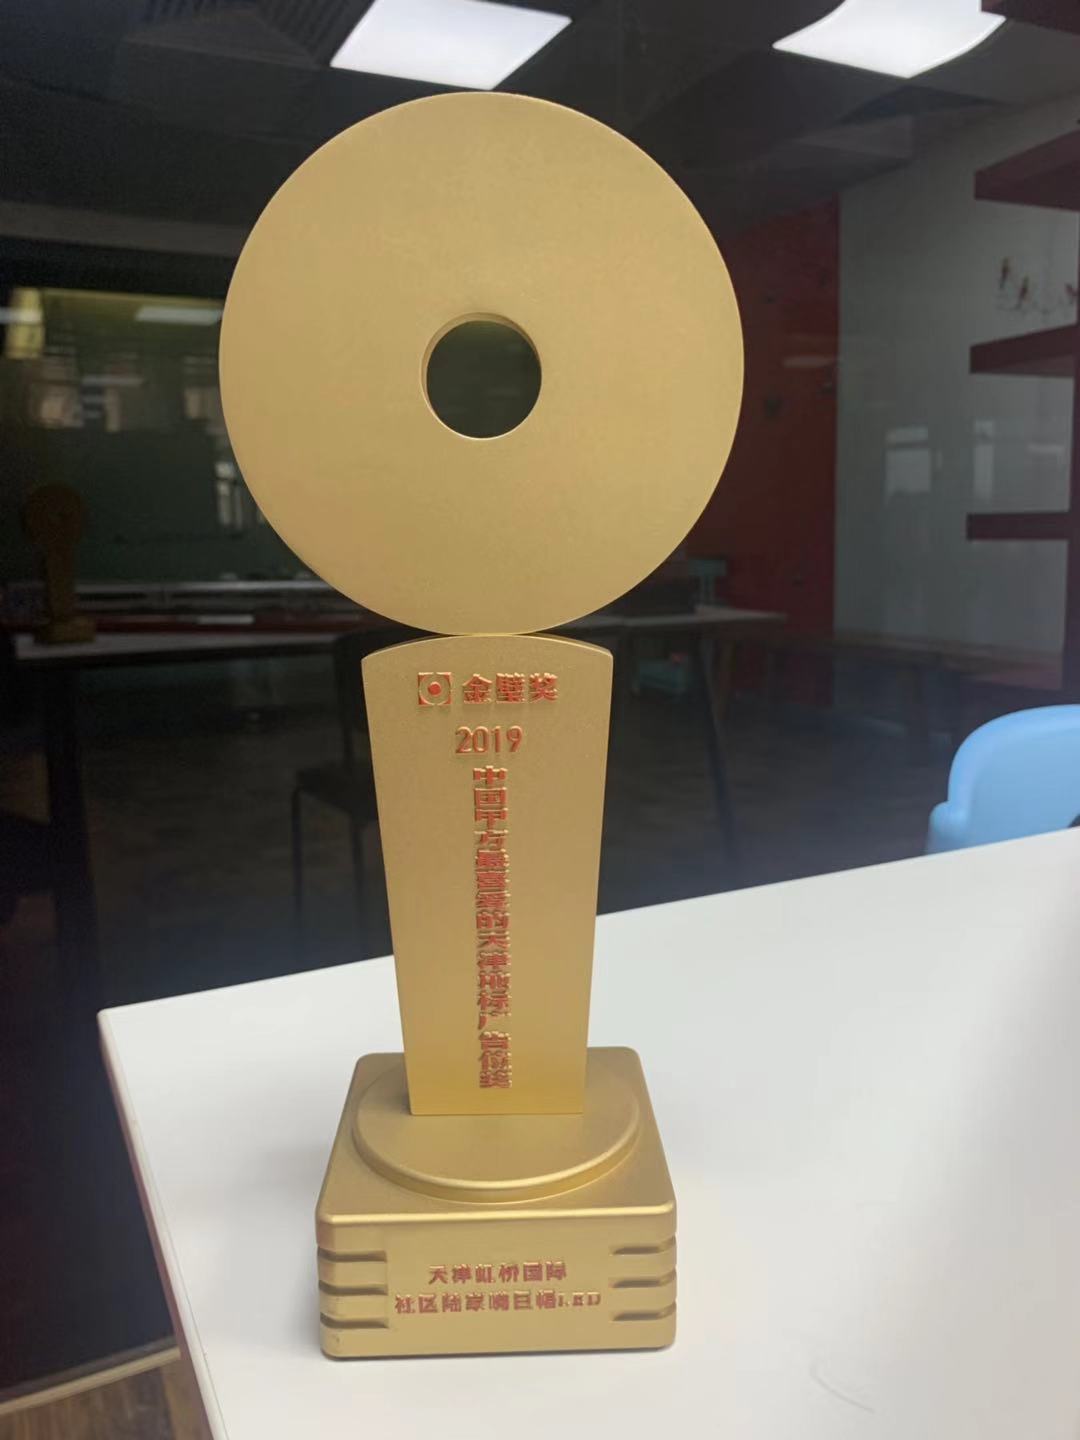 2019年度金璧奖中国甲方最喜爱的地标广告位